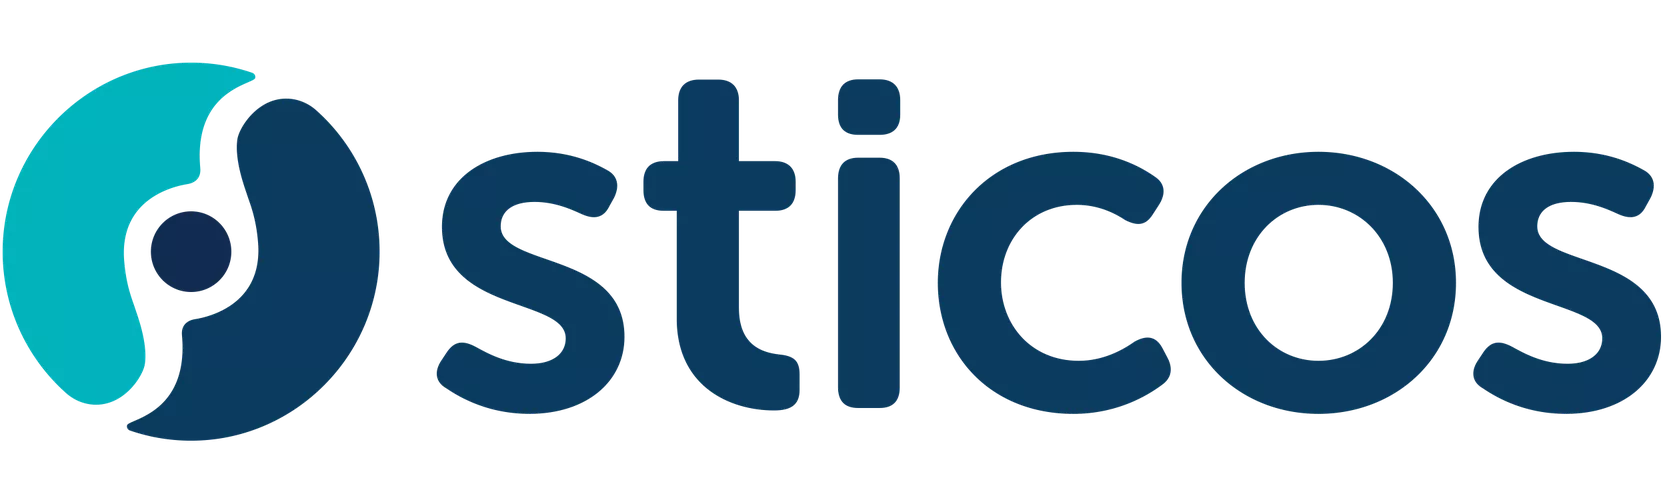 Sticos logo